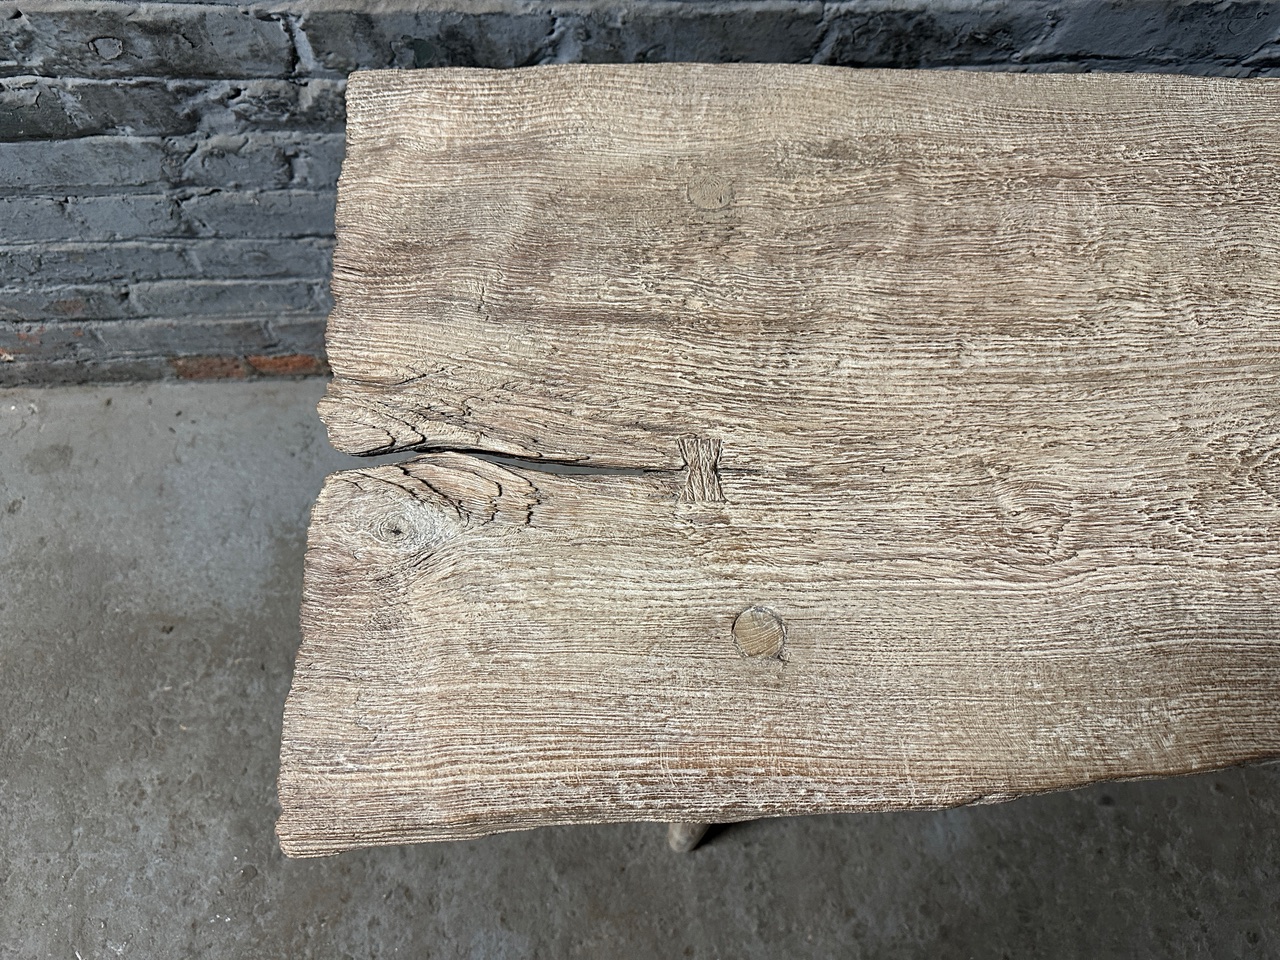 teak wood table